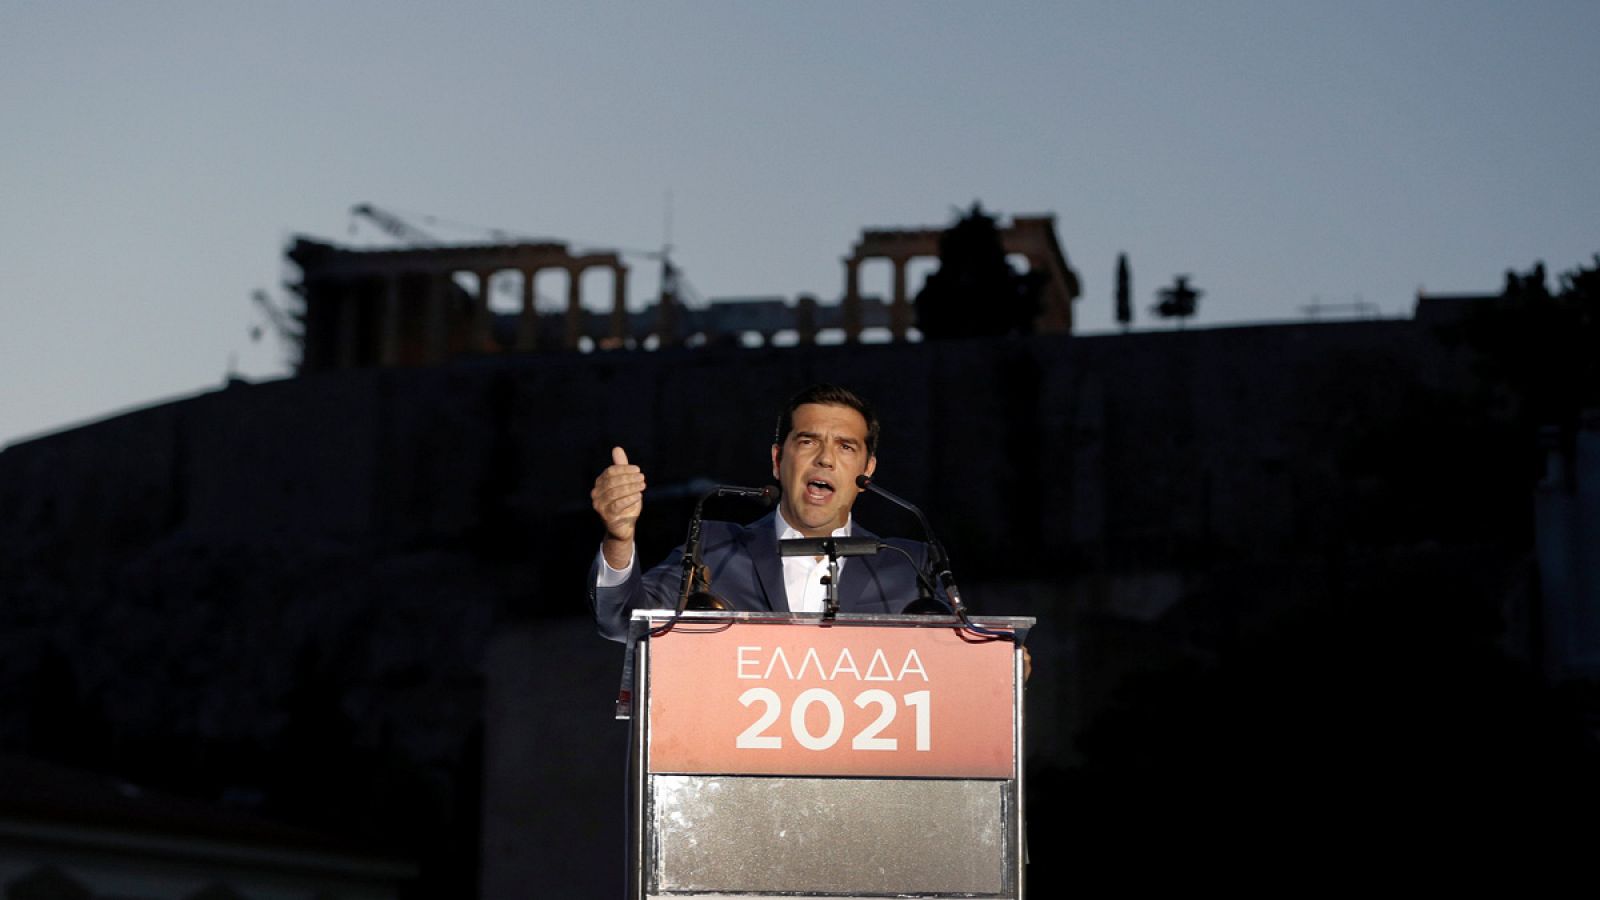 El primer ministro de Grecia, Alexis Tsipras, en un discurso simbólico desde la Acrópolis de Atenas